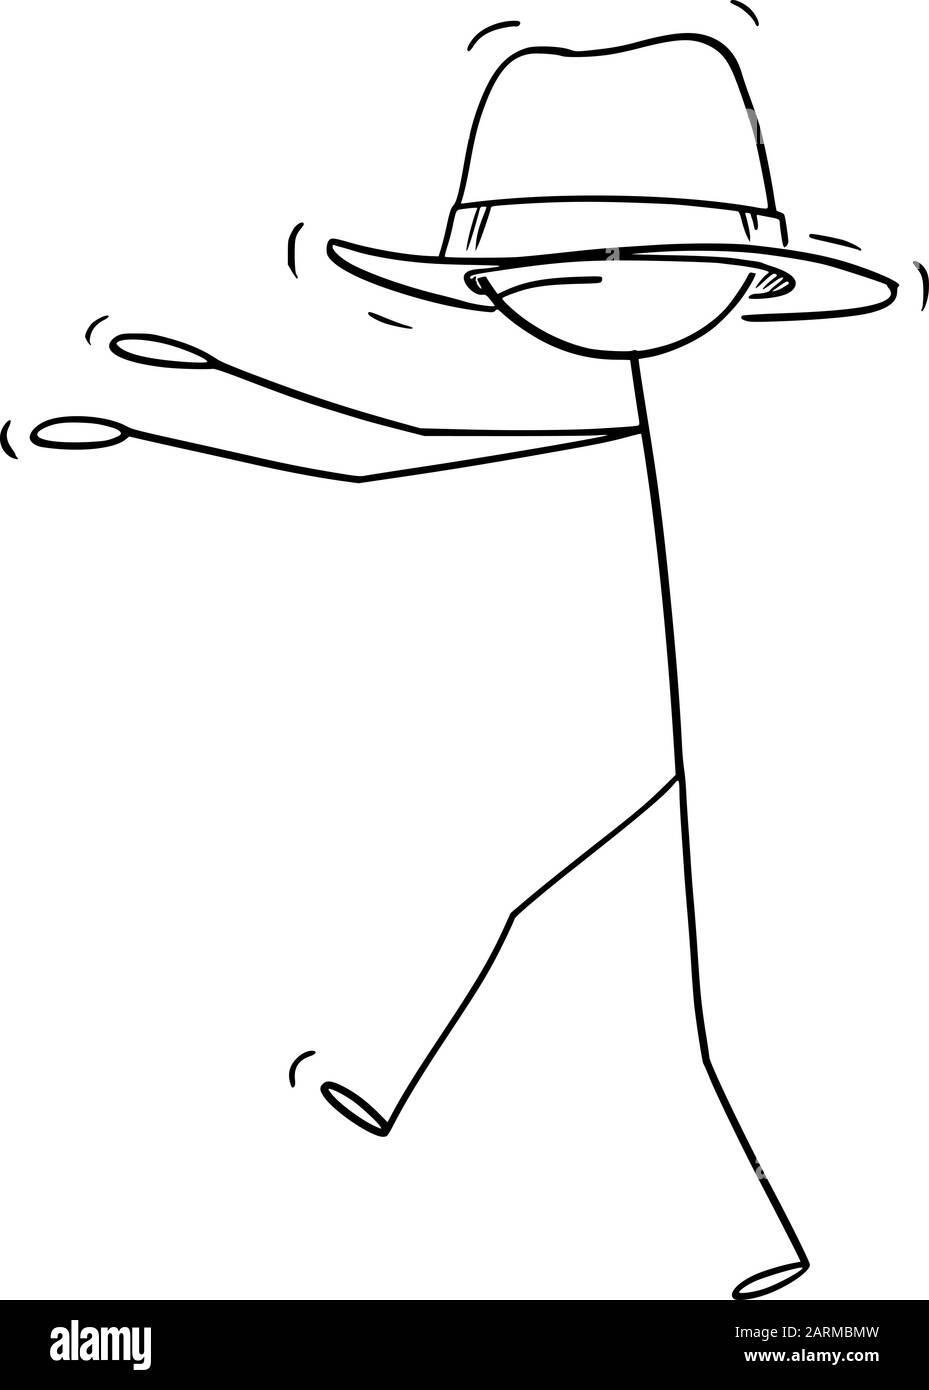 Figura del bastone del cartone animato del vettore che disegna l'illustrazione concettuale dell'uomo o dell'uomo d'affari che cammina cieco a causa di cappello troppo grande per lui che lo copre gli occhi. Illustrazione Vettoriale